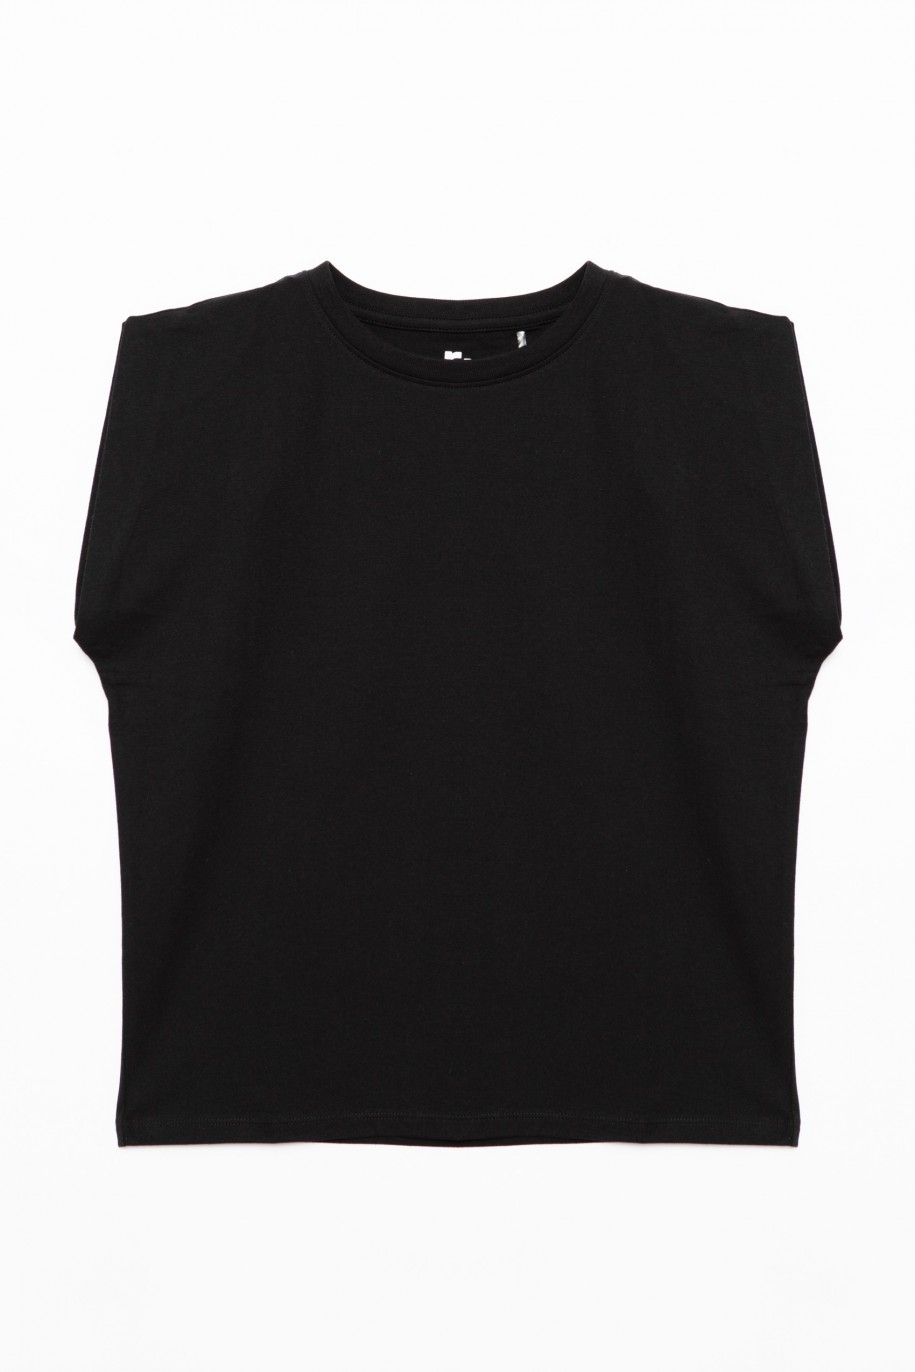 Czarny t-shirt dla dziewczyny - 28558